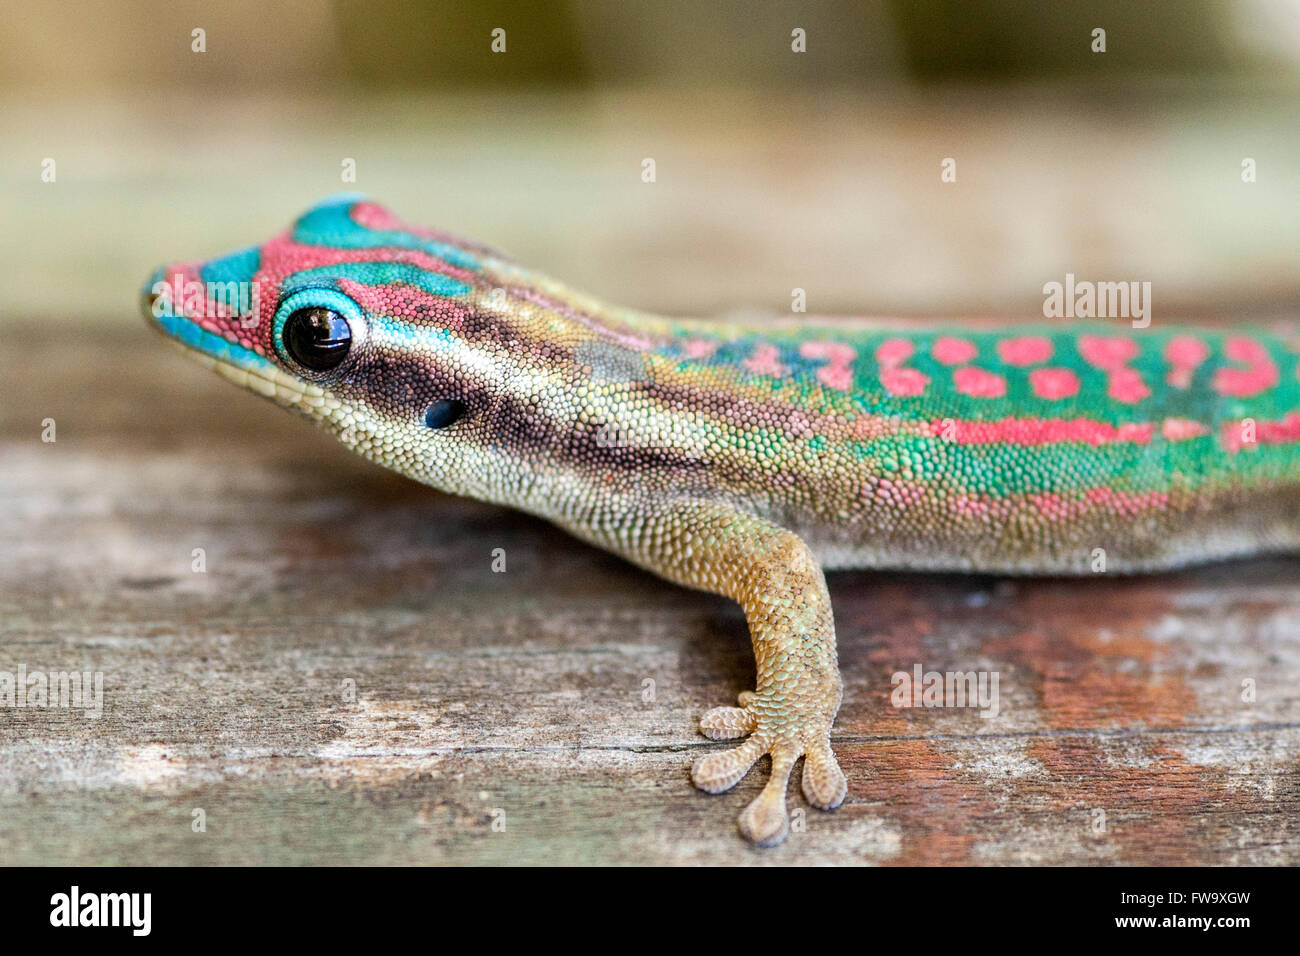 Jour orné (gecko Phelsuma ornata) sur l'île de Ile aux Aigrettes à Maurice. Banque D'Images